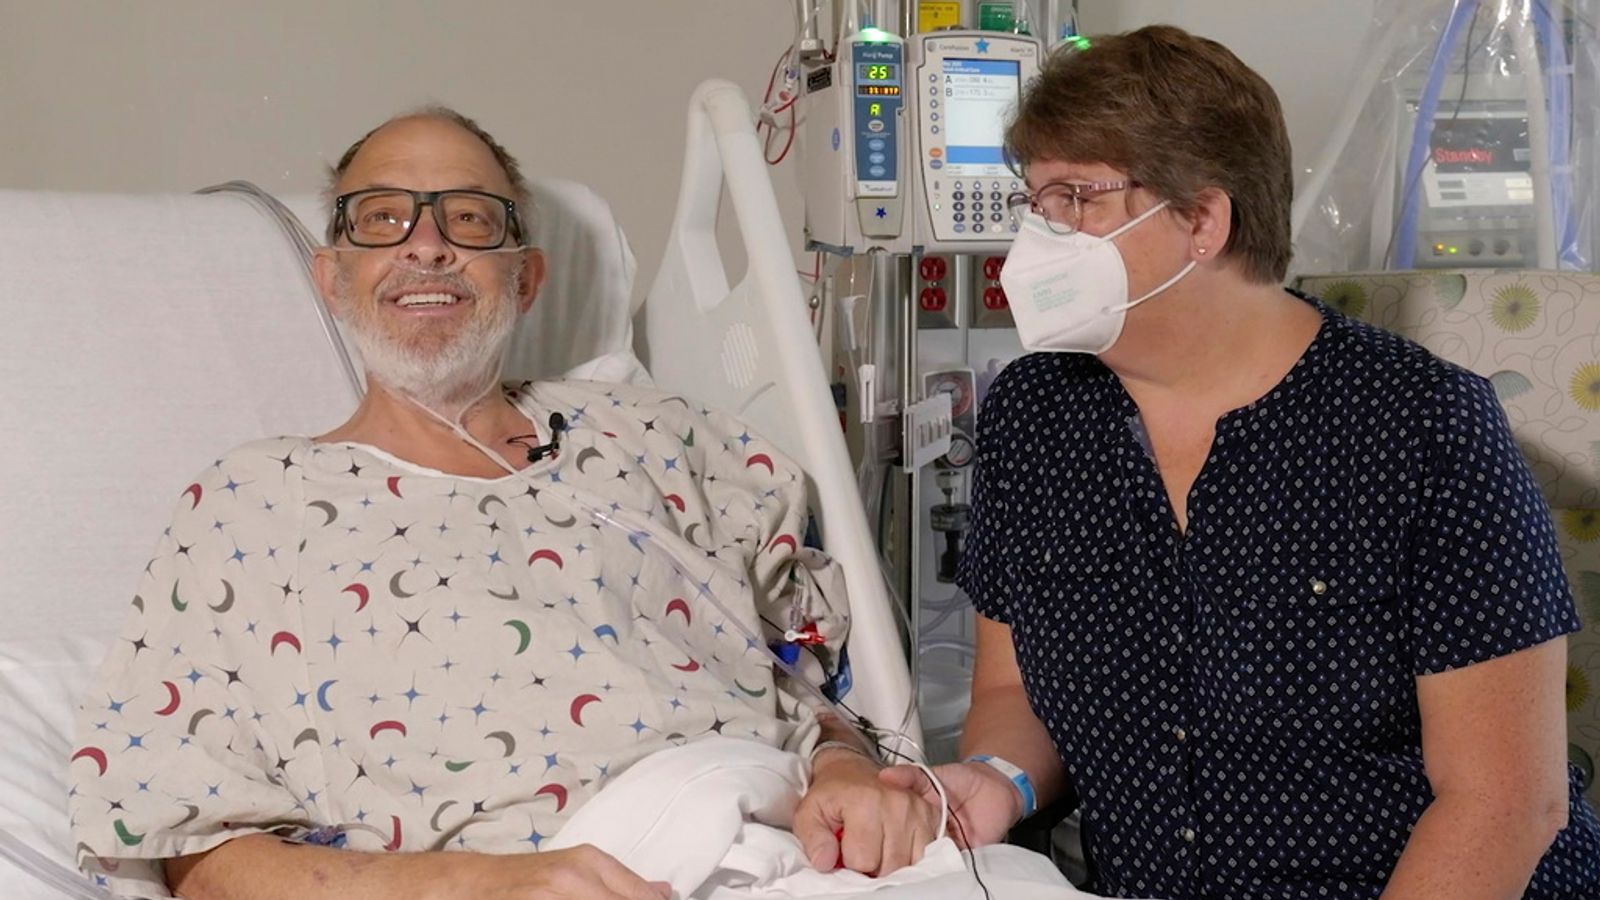 2回目の豚の心臓移植を行った男性がメリーランド州の病院で死亡 | 米国のニュース